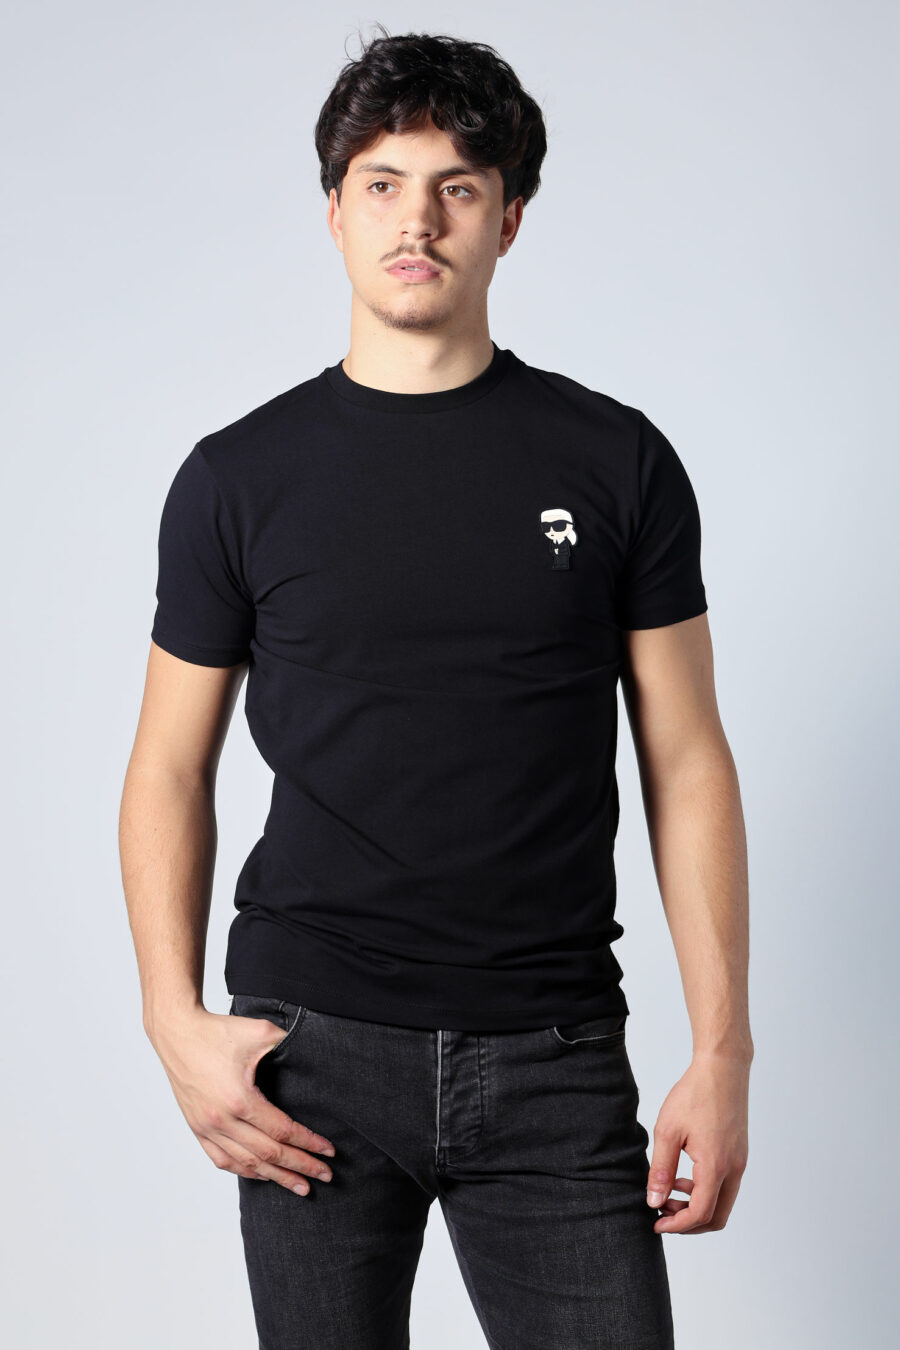 Camiseta negra con logo "ikonik" - Untitled Catalog 05720